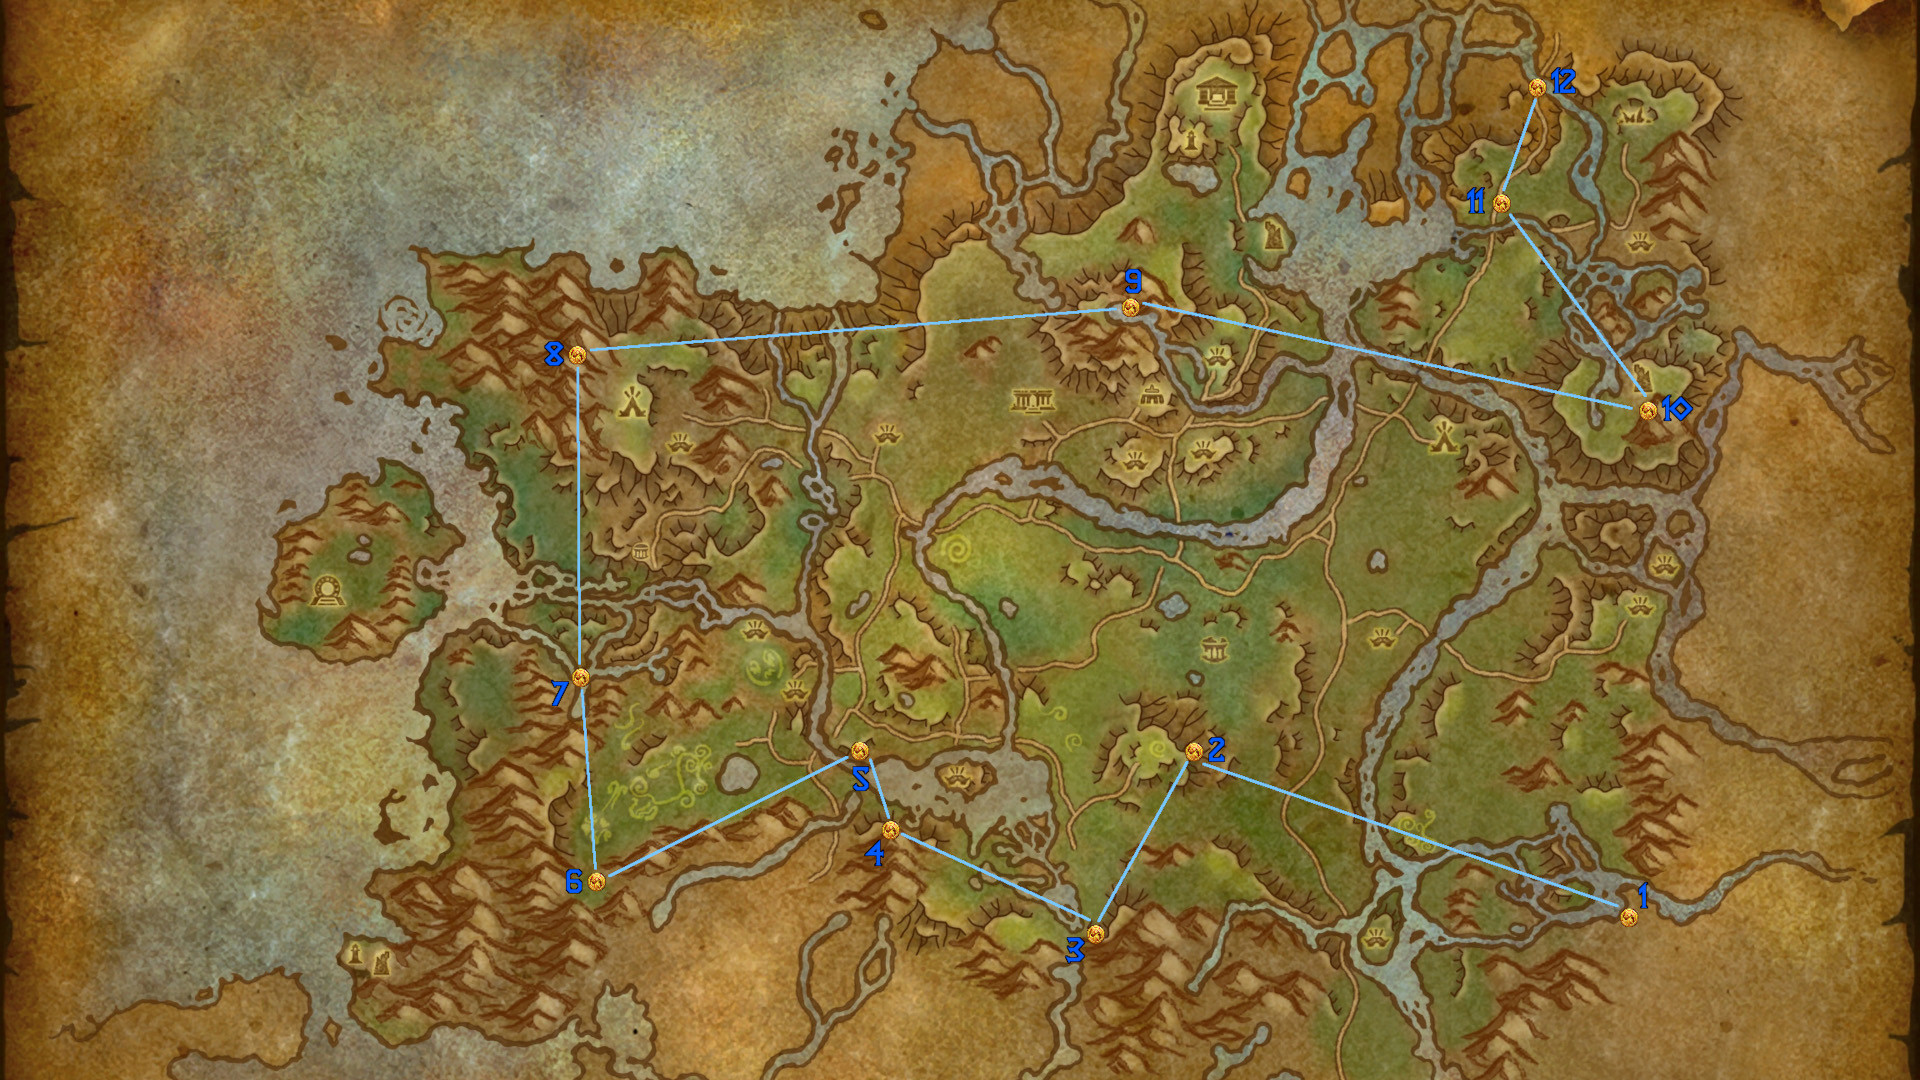 वर्ल्ड ऑफ वॉरक्राफ्ट ड्रॅगनफ्लाइट नकाशा ओशरानसह पिनसह ड्रॅगन ग्लिफ्स हायलाइट करीत आहे